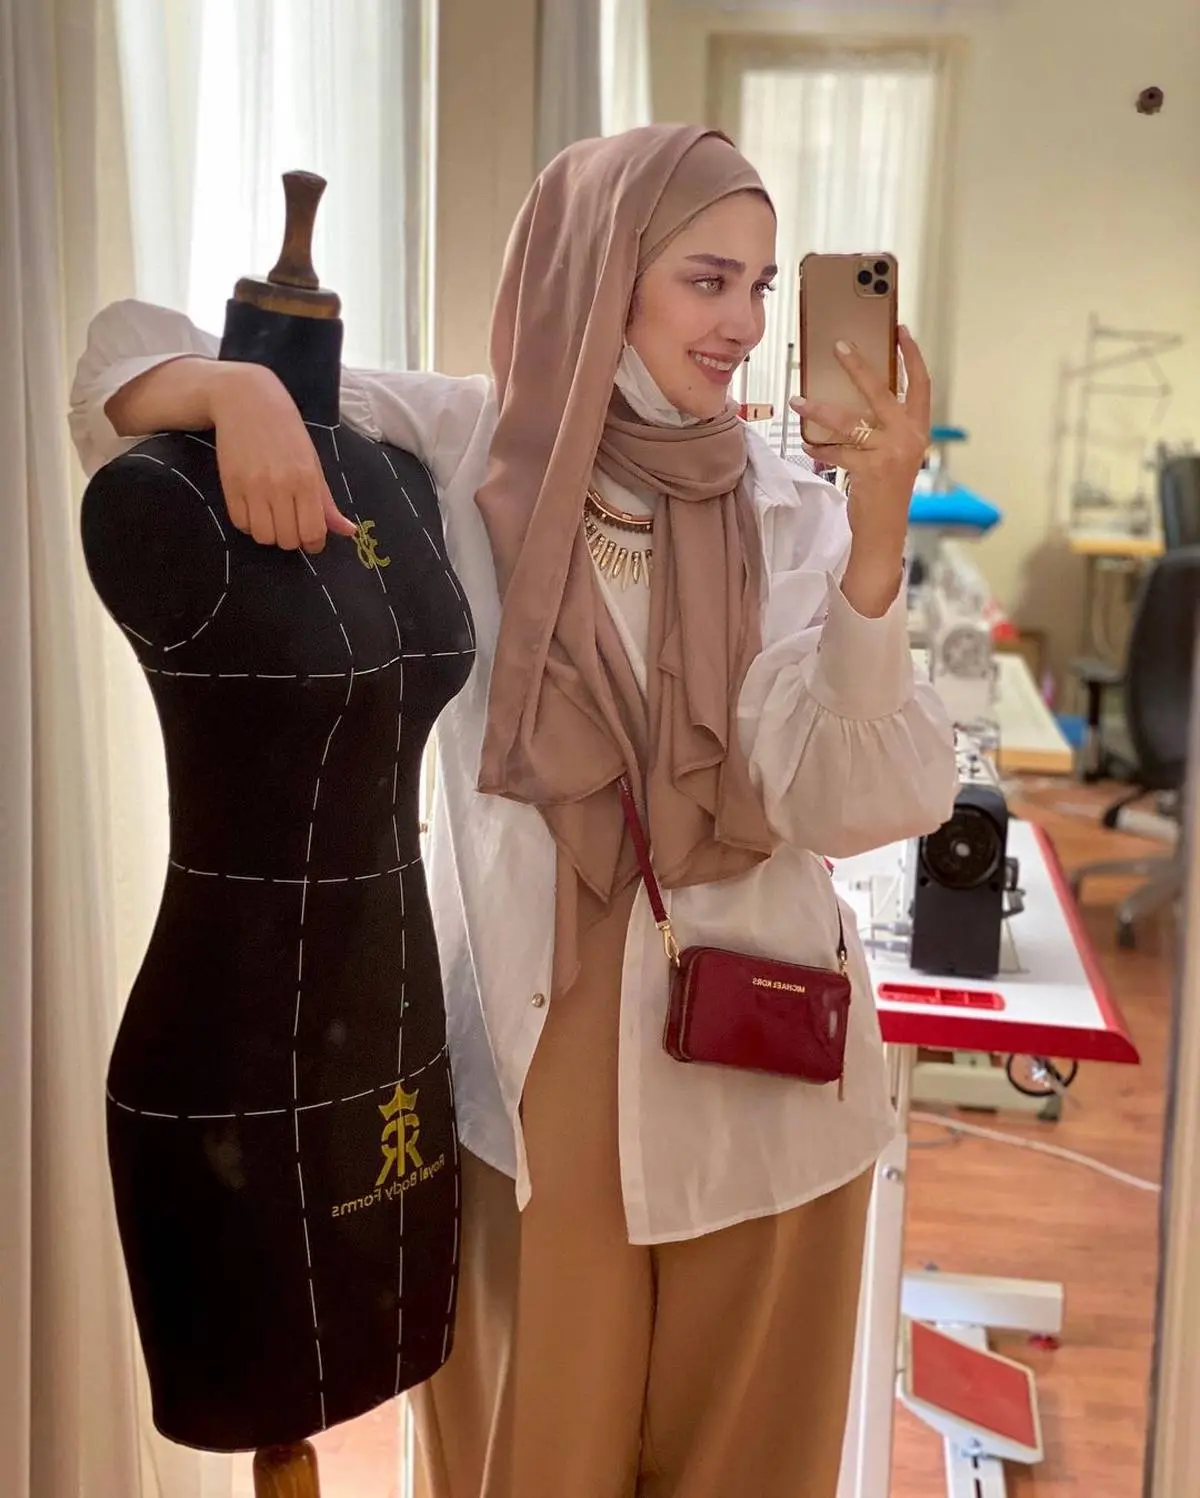 آناشید حسینی صاحب برند لباس عروس هیبا کیست؟